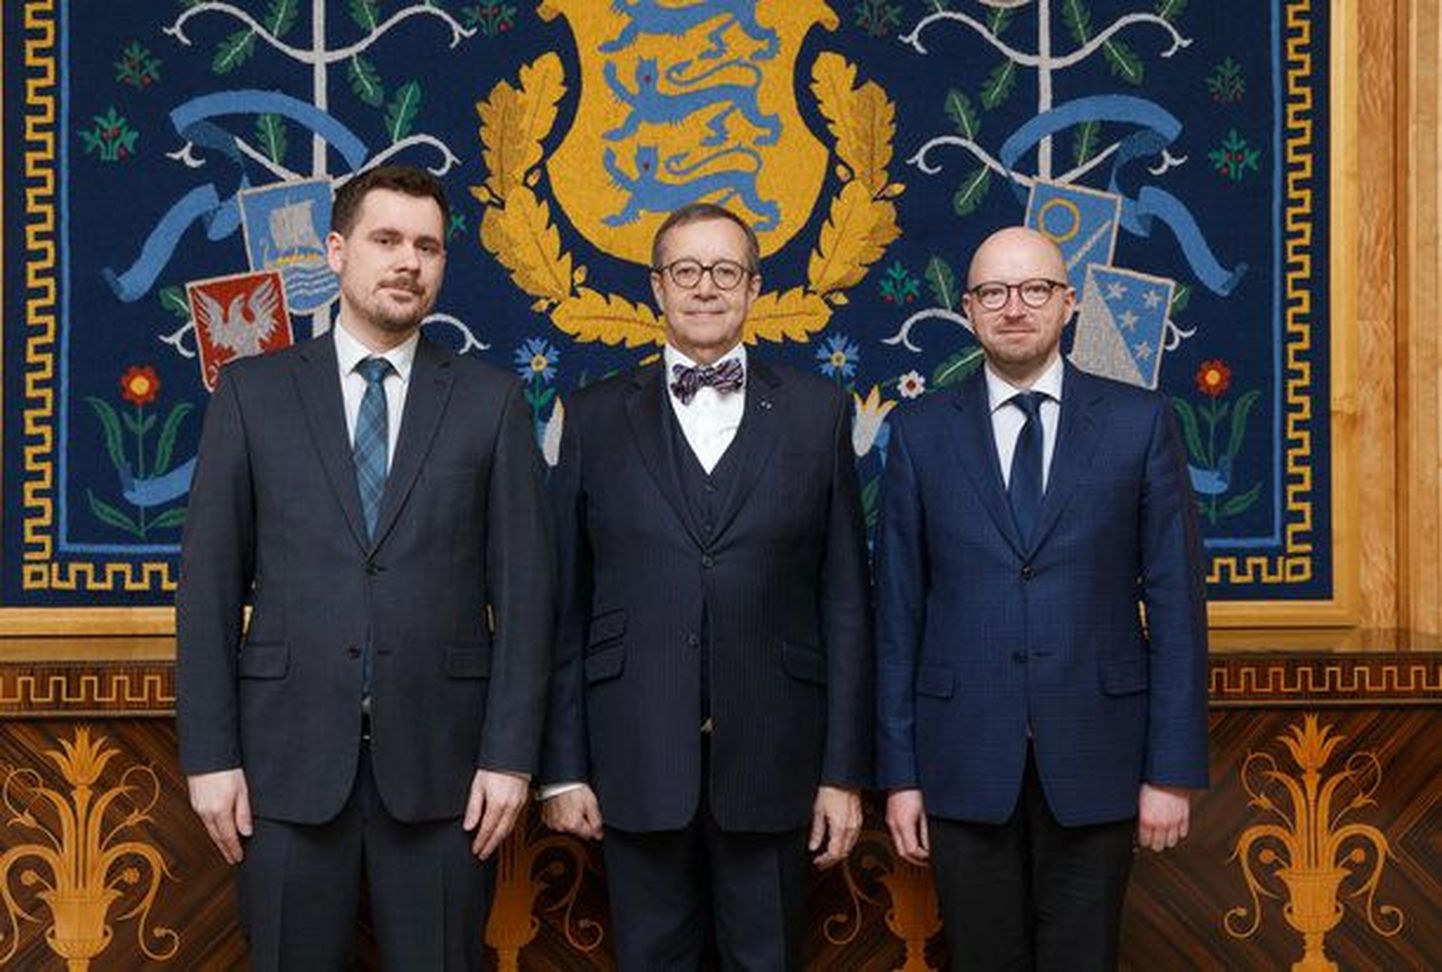 Kohtunikuks nimetatud Janek Laidvee (vasakul) koos president Toomas Hendrik Ilvese ja riigikohtu esimehe Priit Pikamäega.